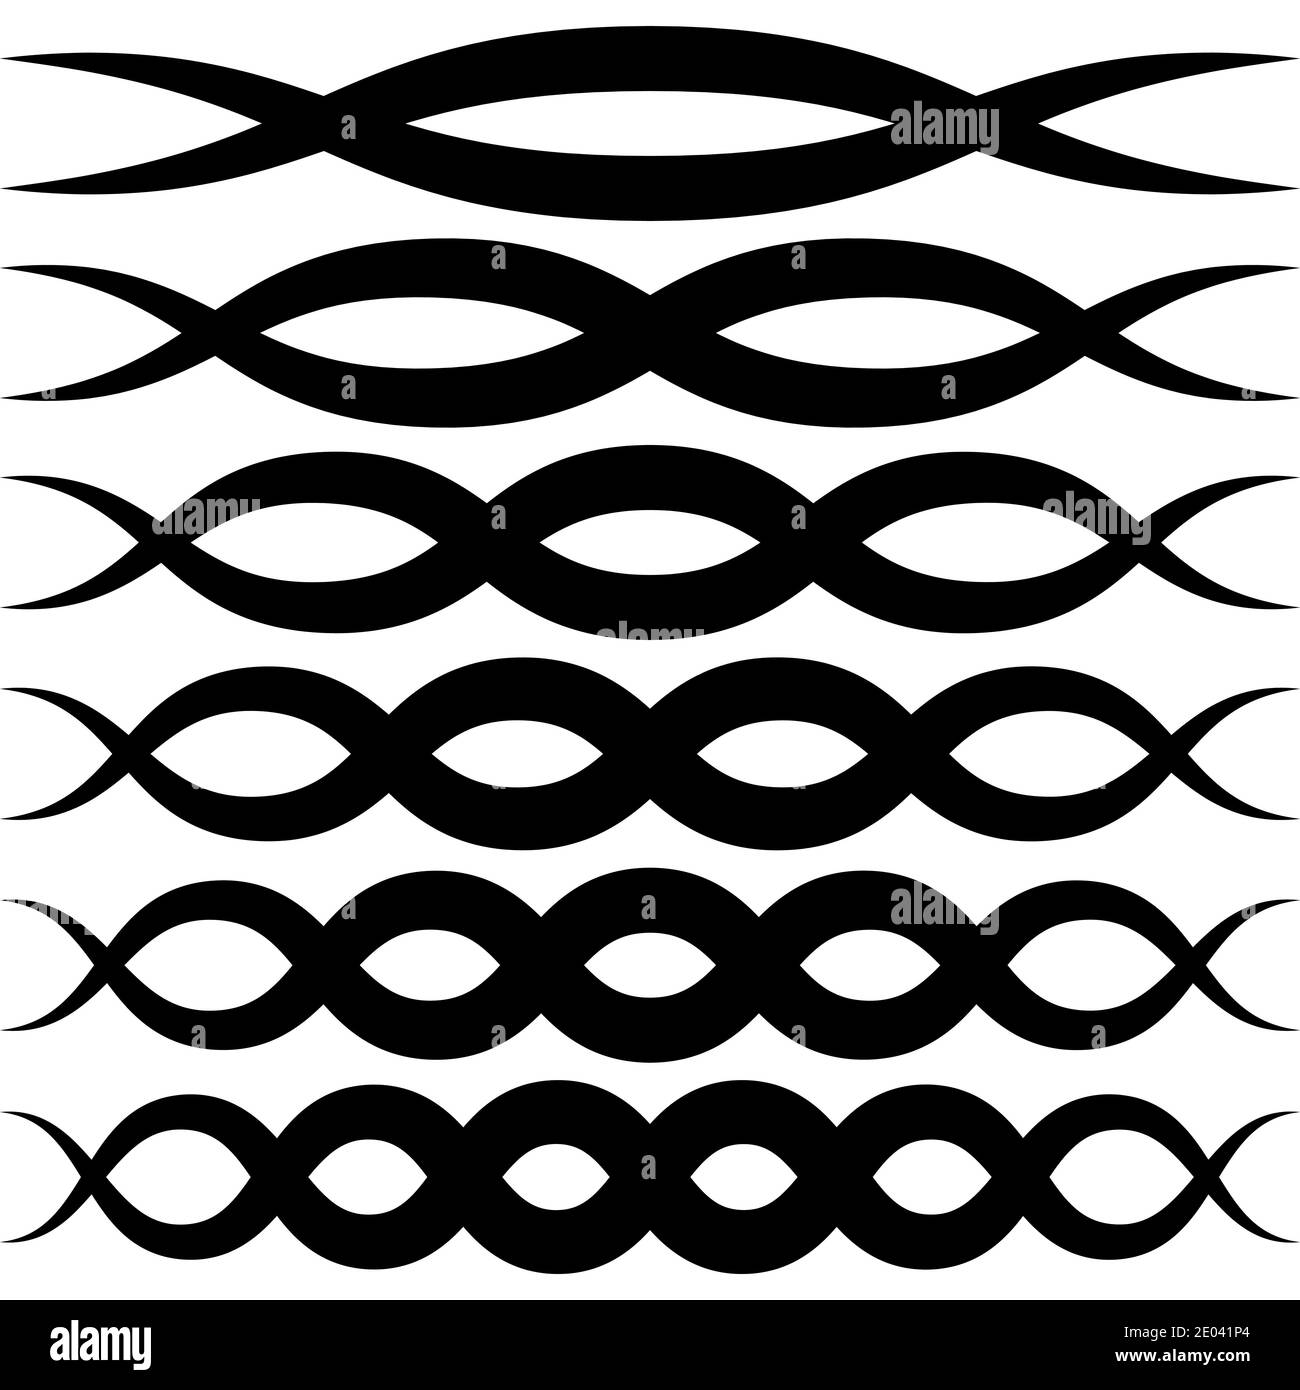 Définir des motifs vagues pour la décoration, des bandes d'ondes vectorielles entrecroisées macrame élégant squiggle, des éléments de calligraphie Illustration de Vecteur